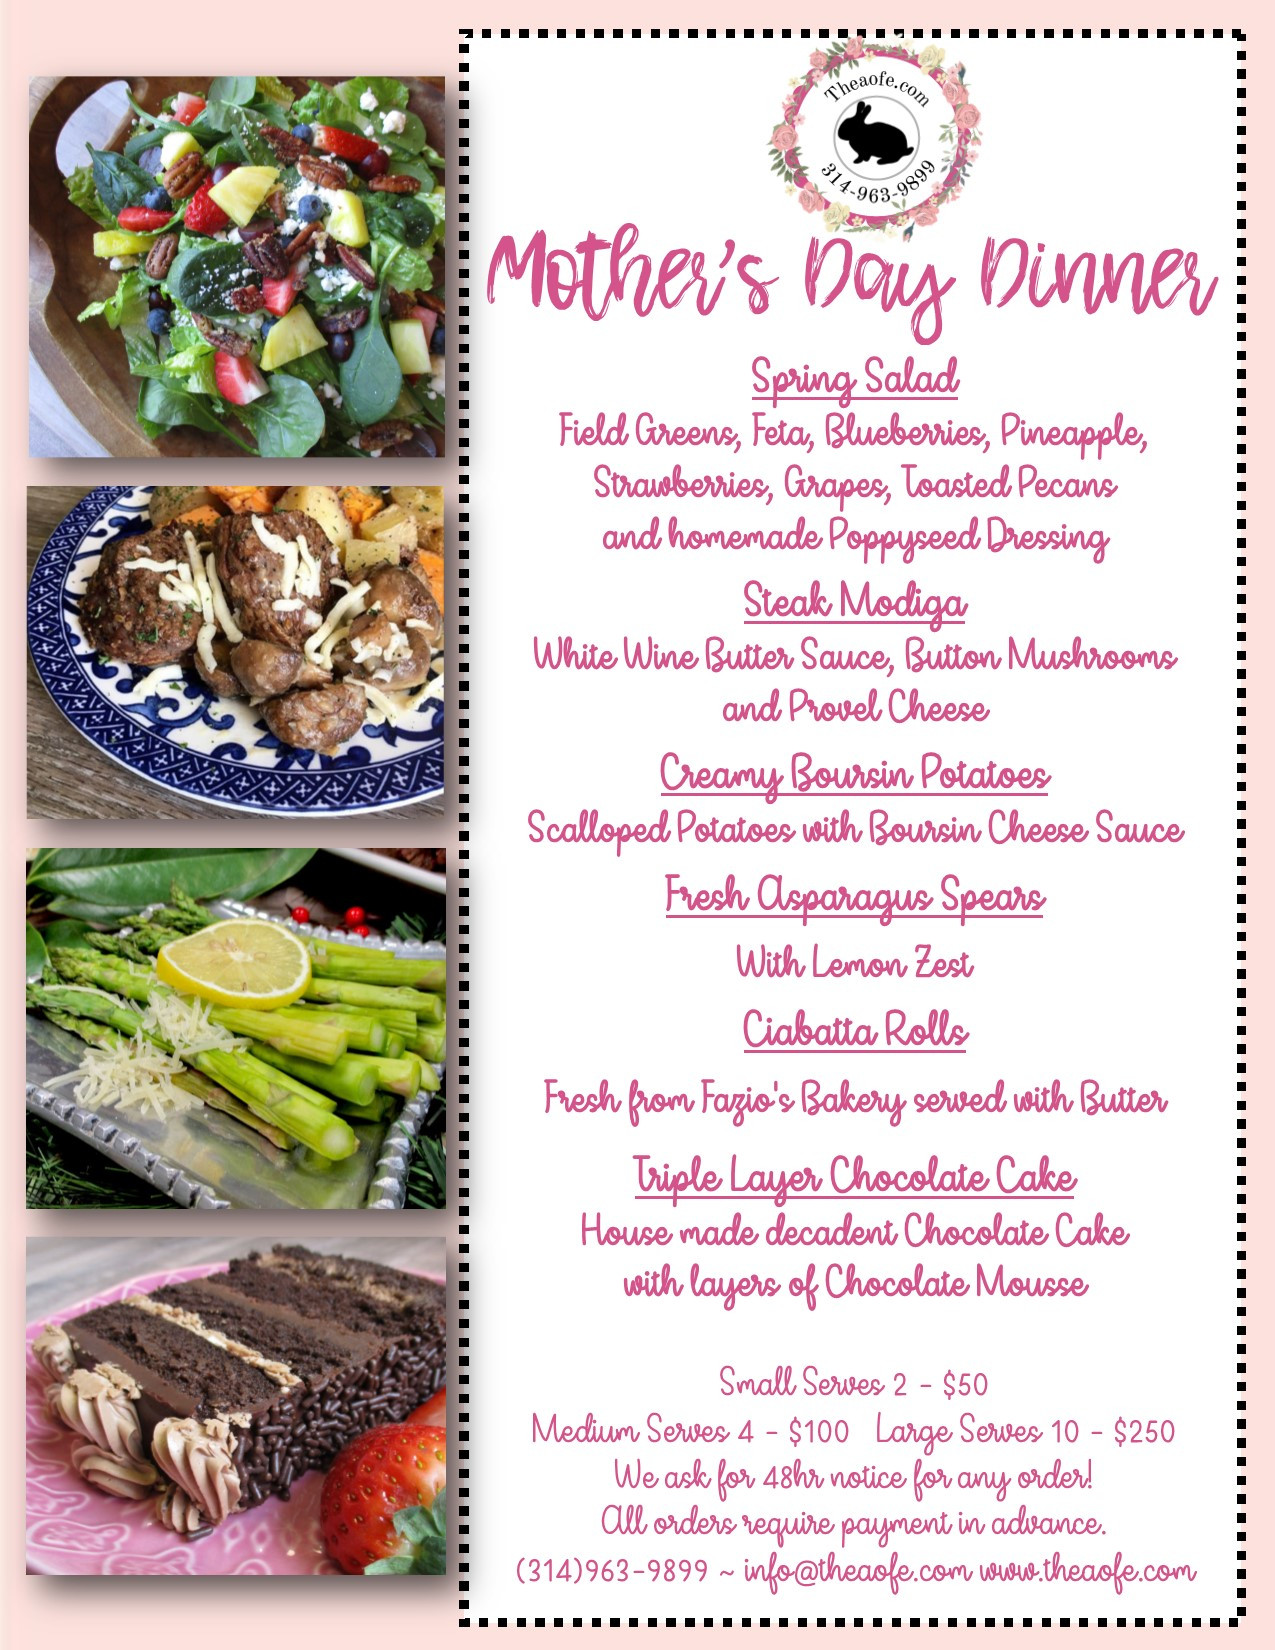 Mothers Day Dinner Menus Fresh Mother S Day Dinner 2019 the Art Of Entertaining the Art